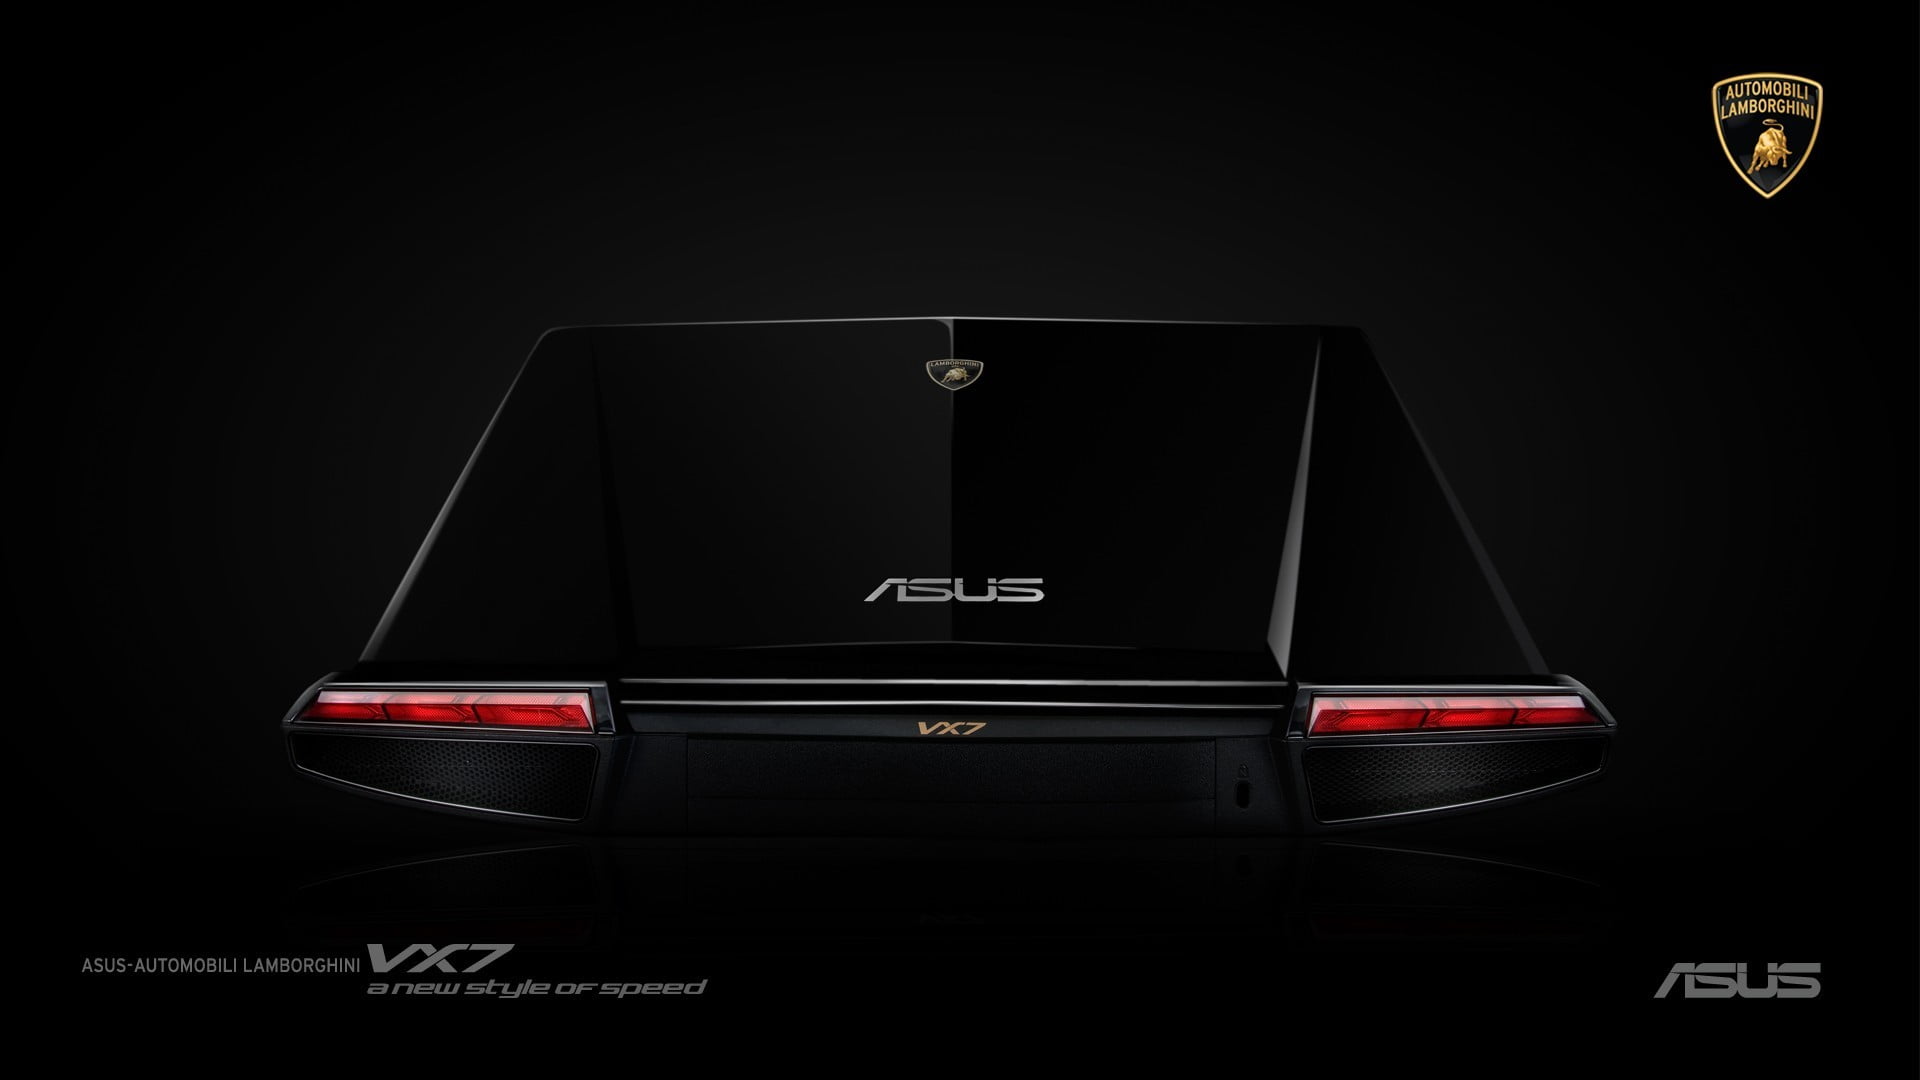 black Asus gaming laptop, Republic of Gamers, black background